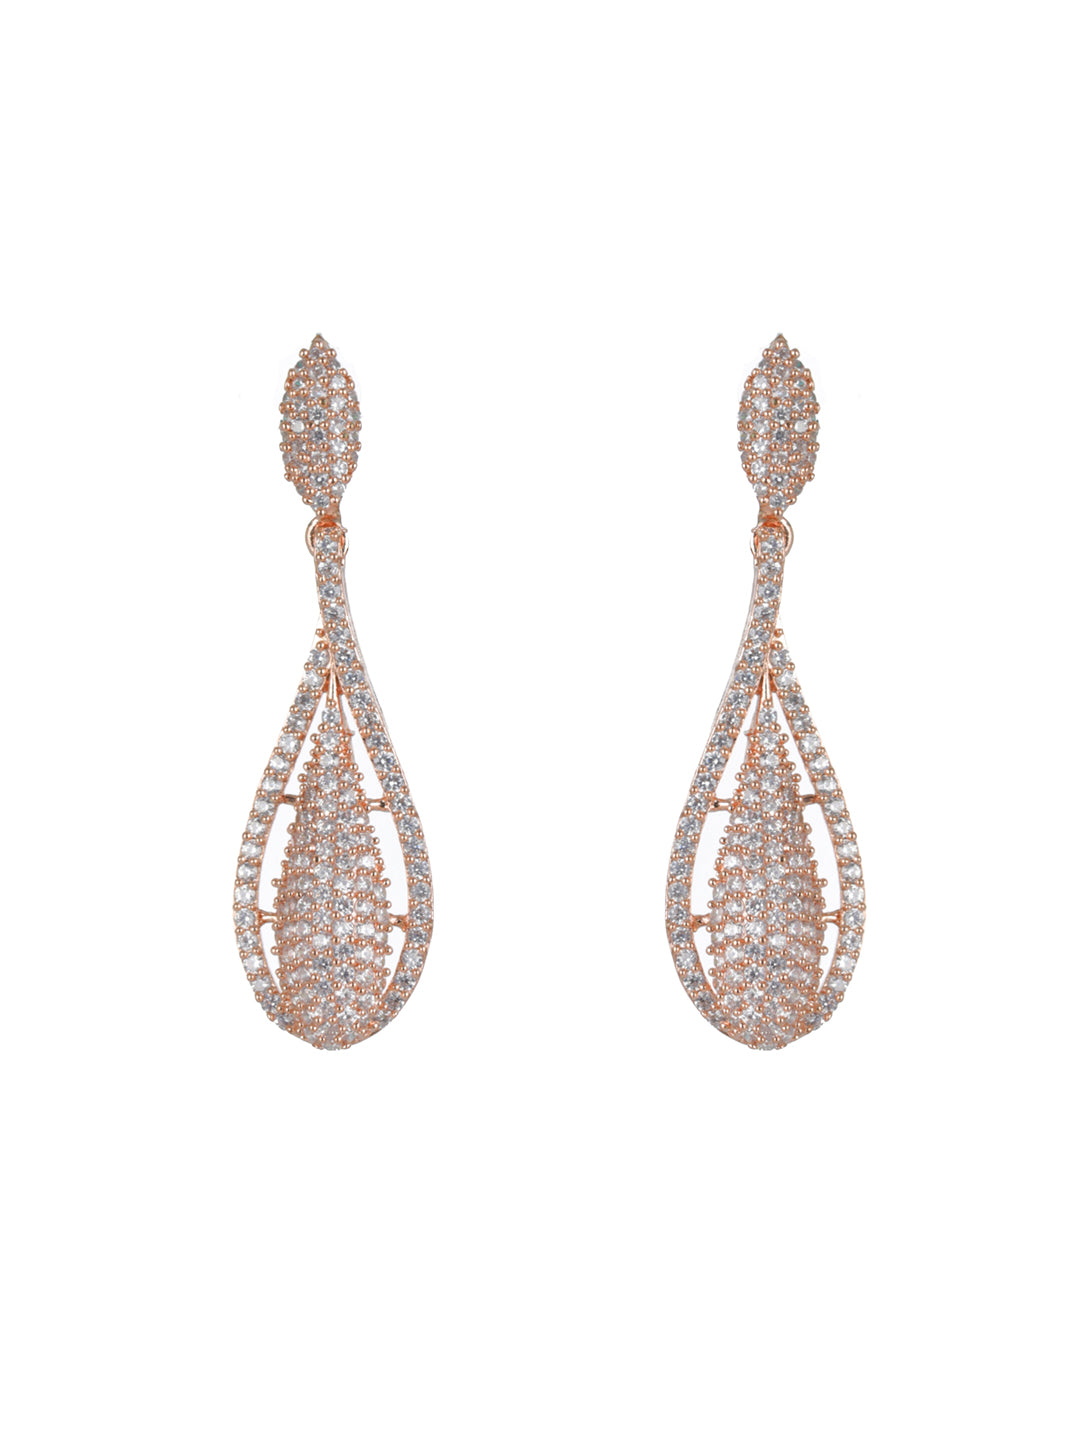 Priyaasi Elegant AD Rose Gold-Plated Drop Earrings